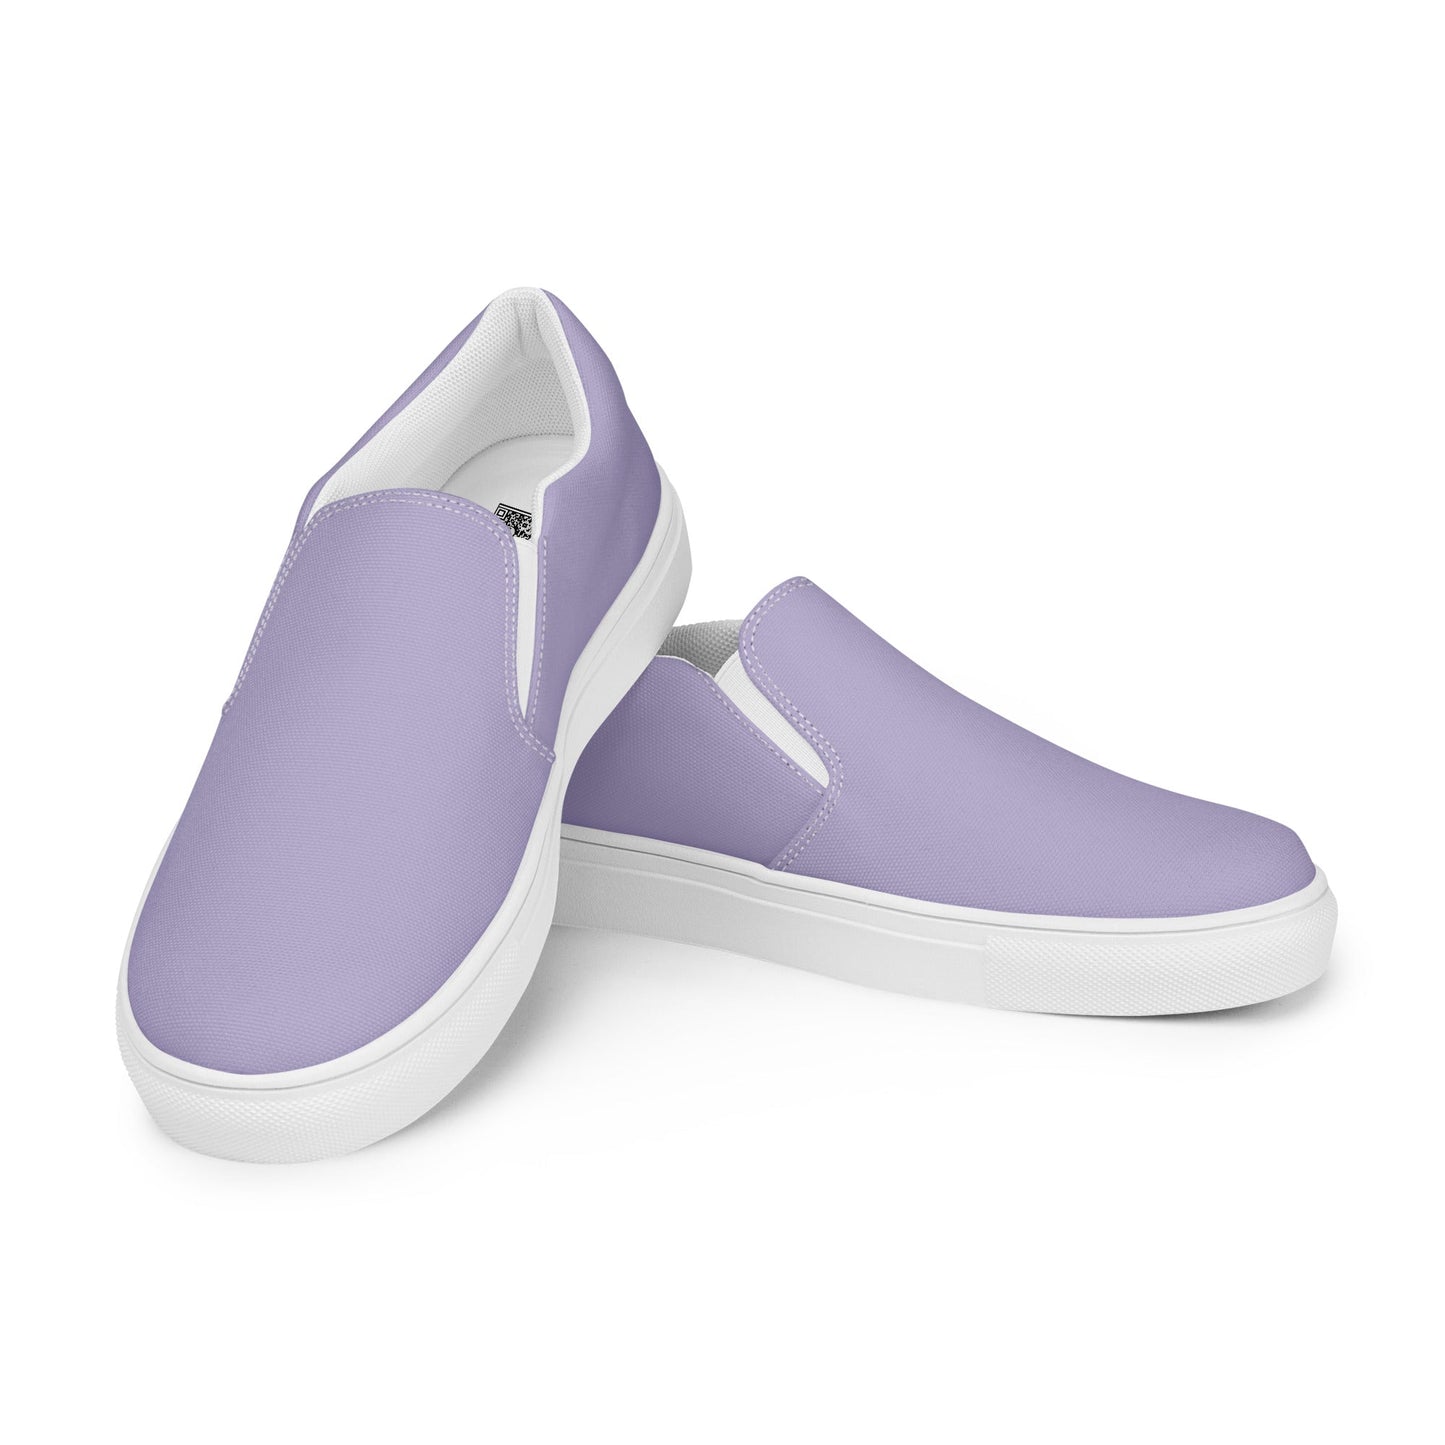 klasneakers Men’s slip-on canvas shoes - Lavender